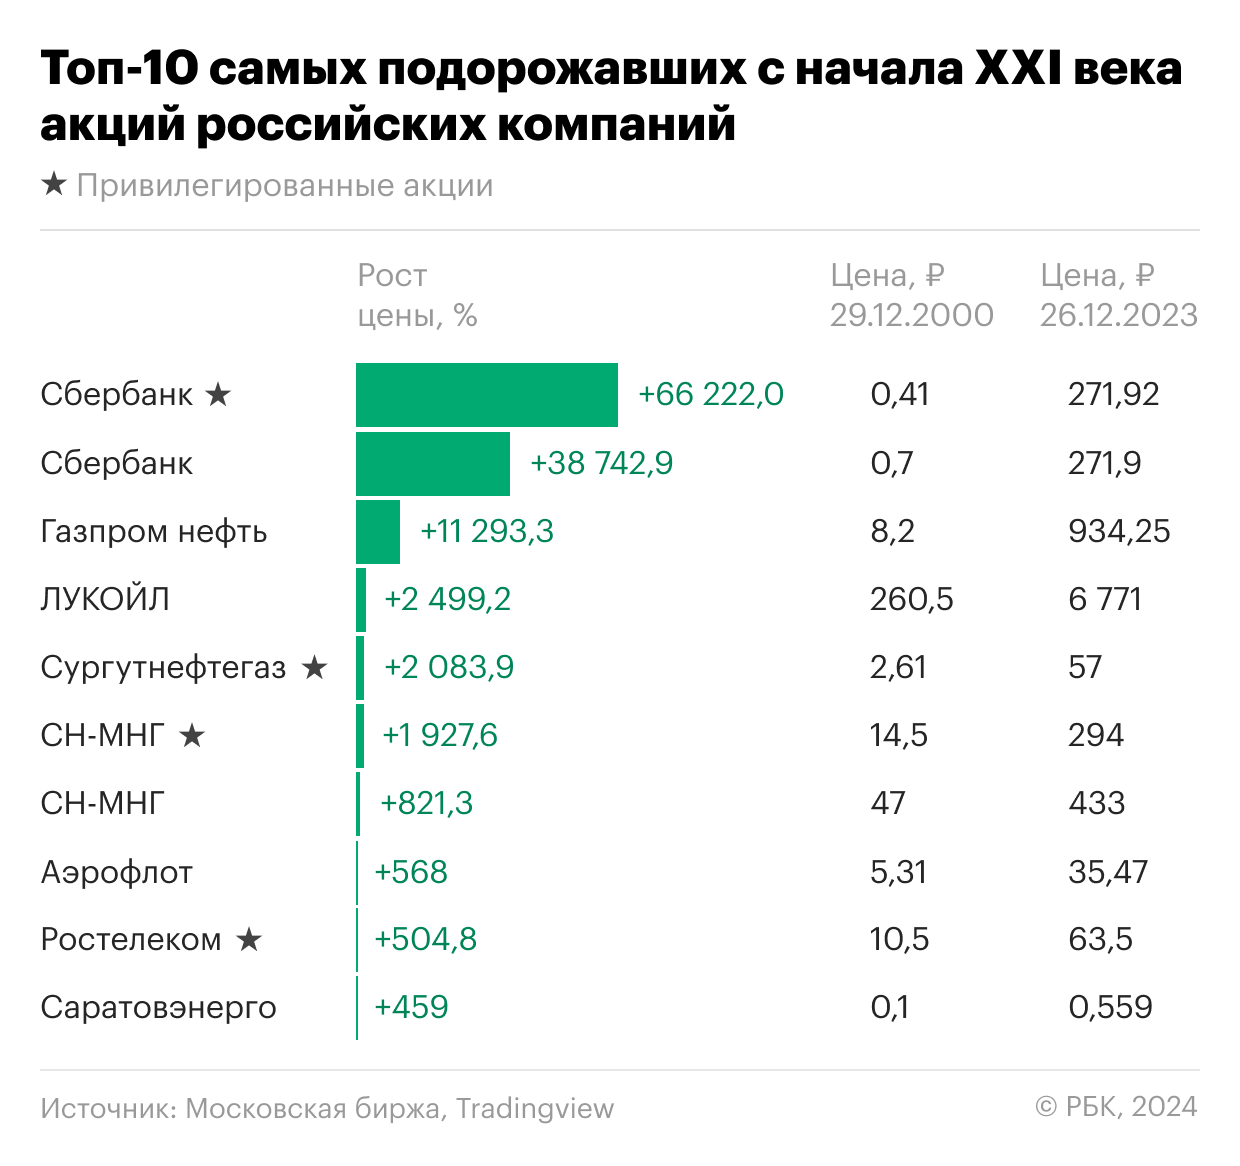 Наиболее подорожавшие в XXI веке акции российских компаний